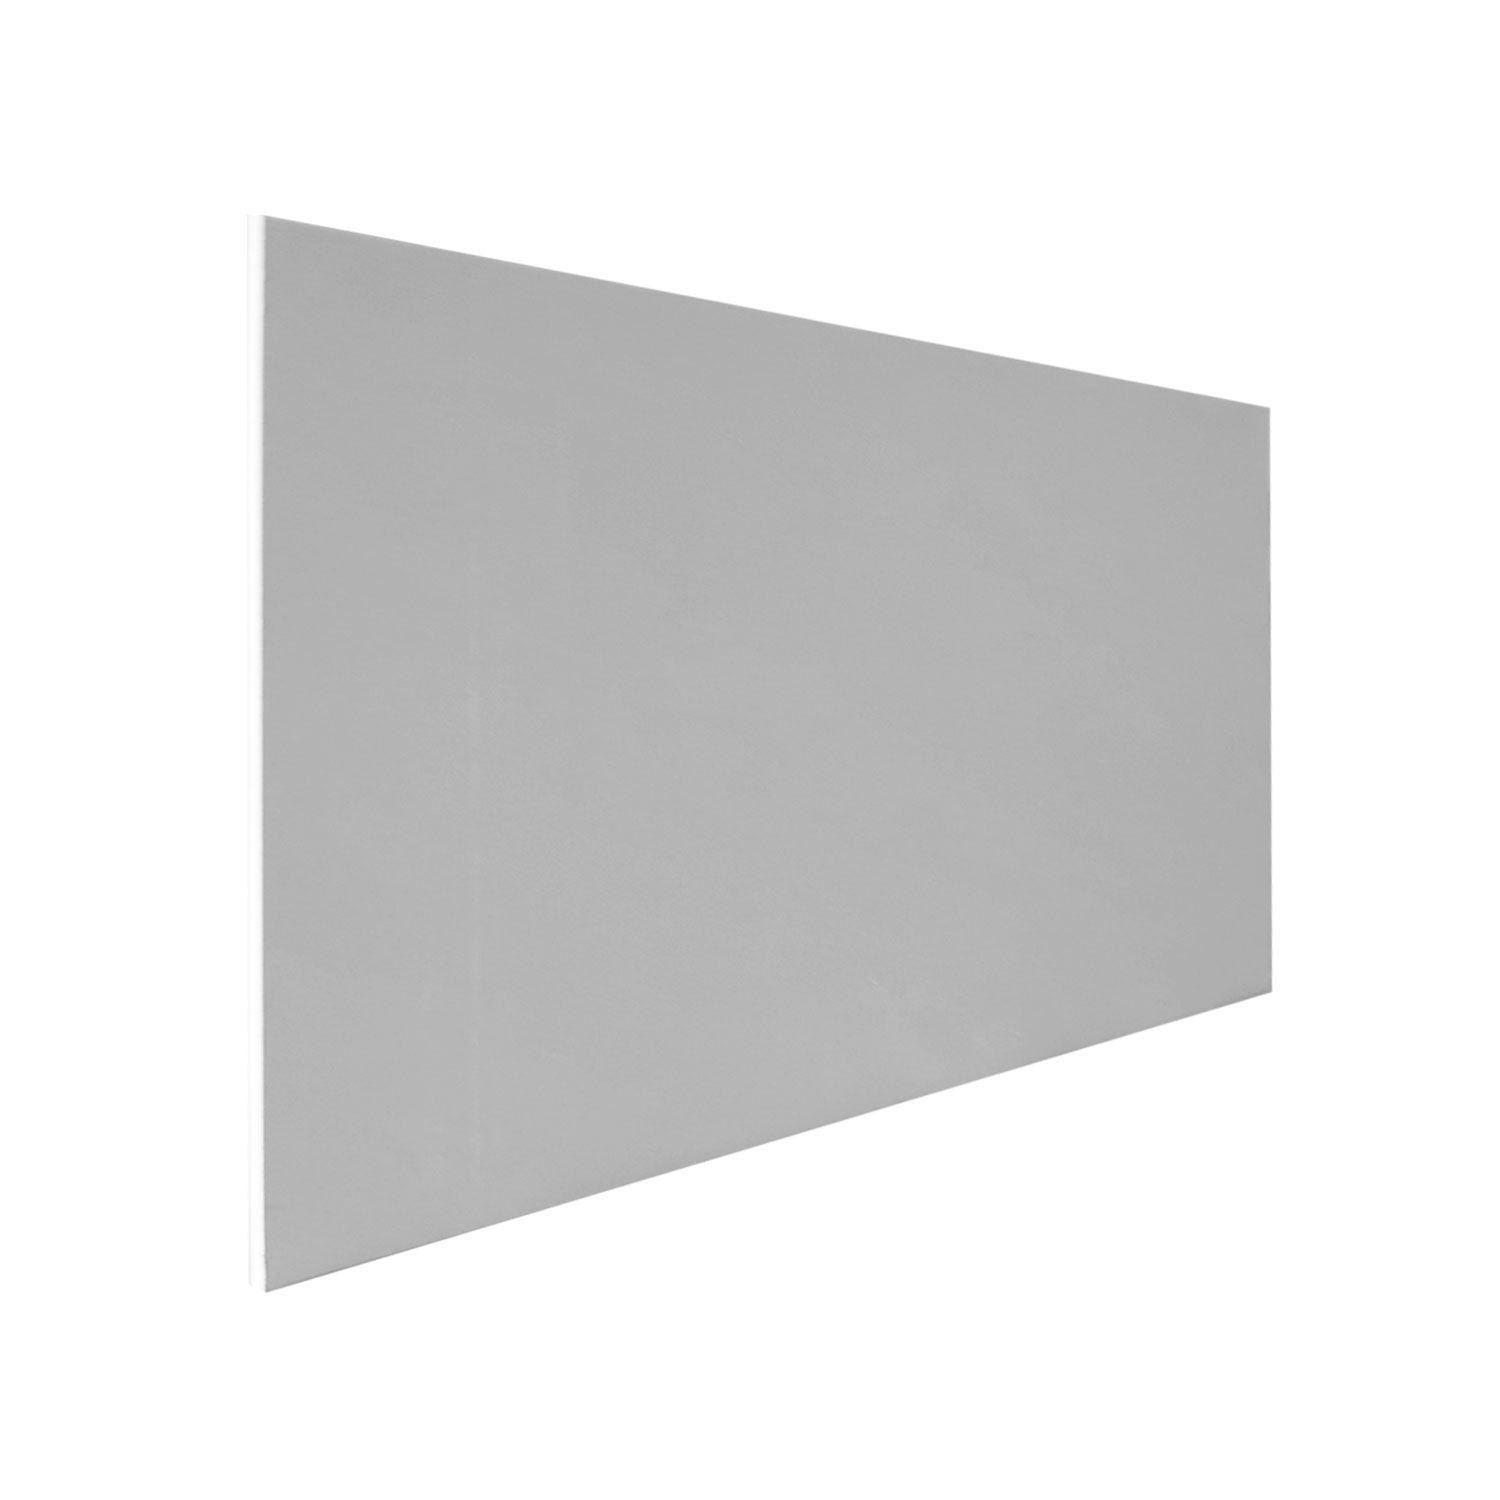 Plasterboard 6' x 3' 9.5mm Square Edge